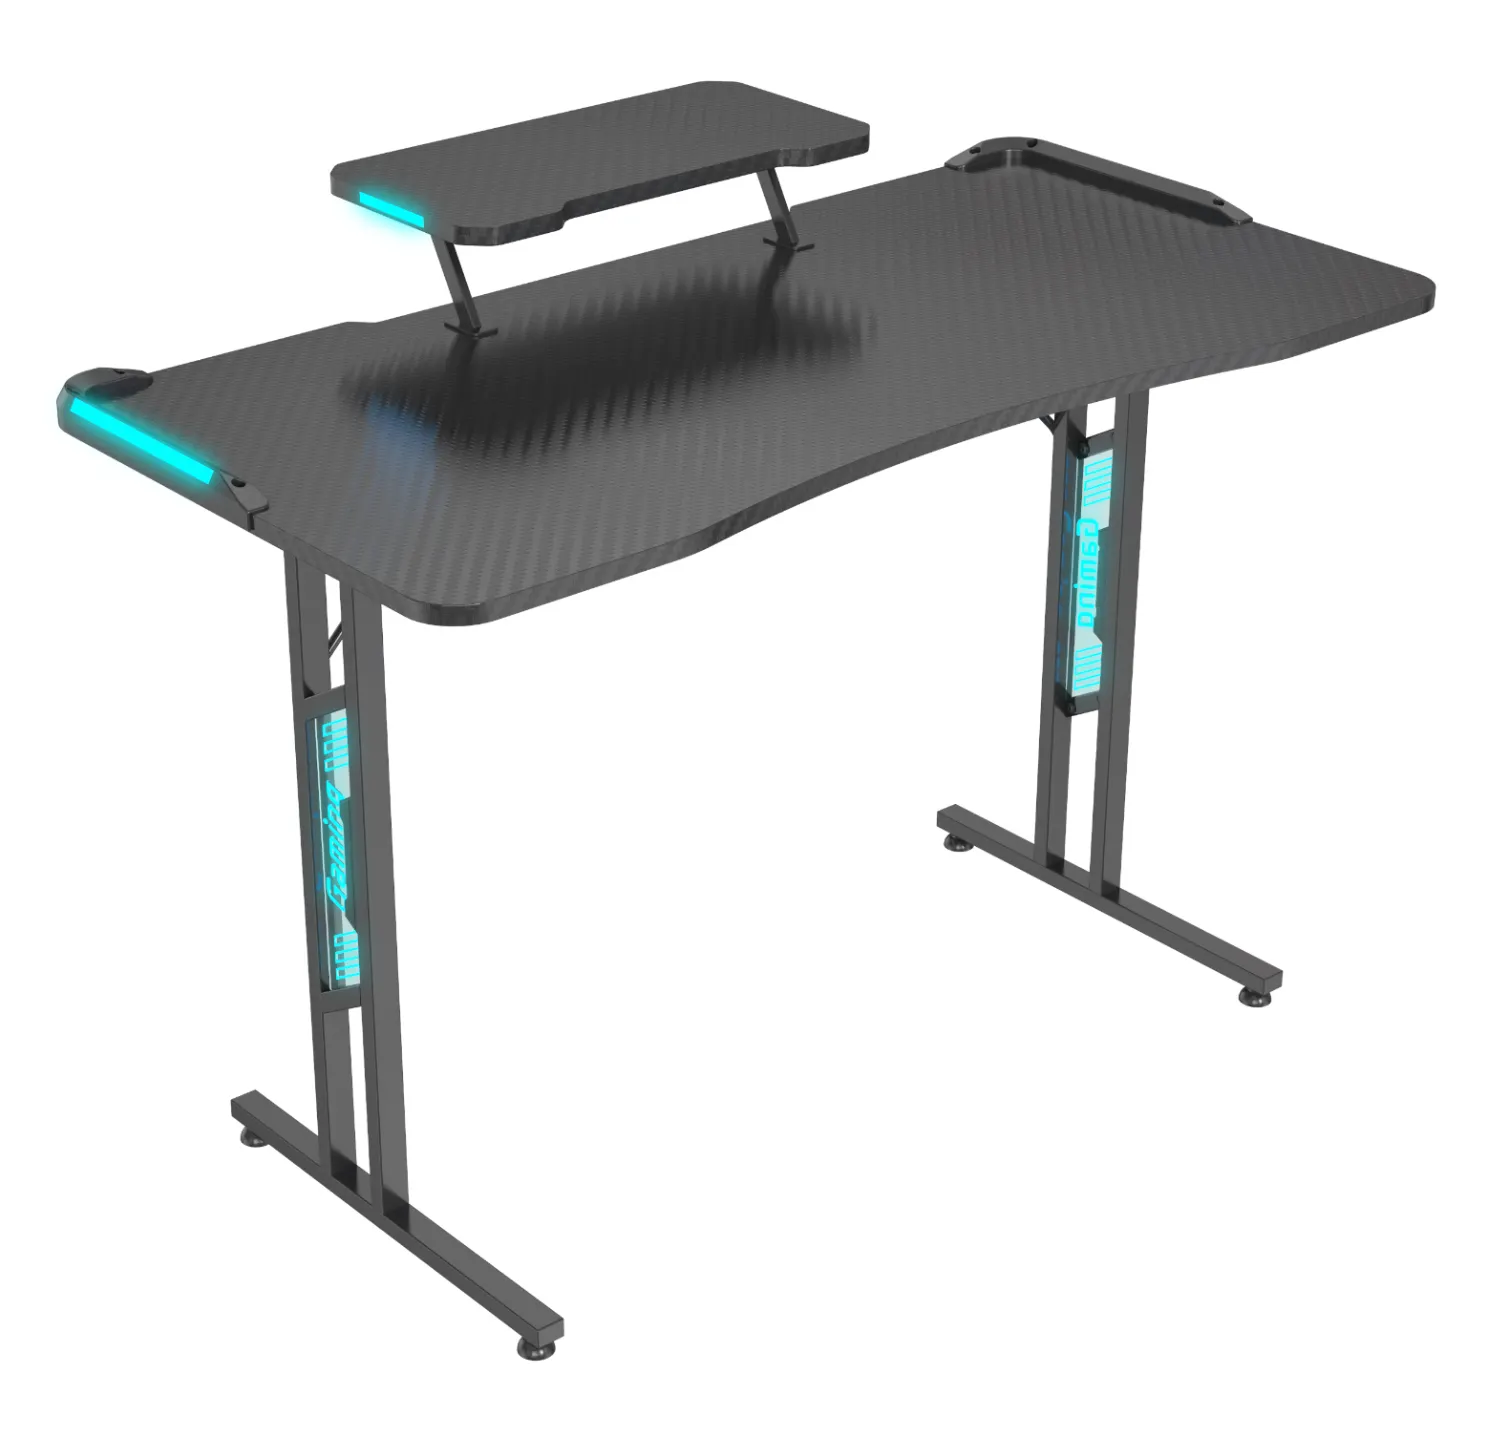 V-Halterungen Ergo Fusion Modern Black Standing Verstellbarer PC-Spieltisch Eisen Büromöbel Home School Tischbein Acryl platte